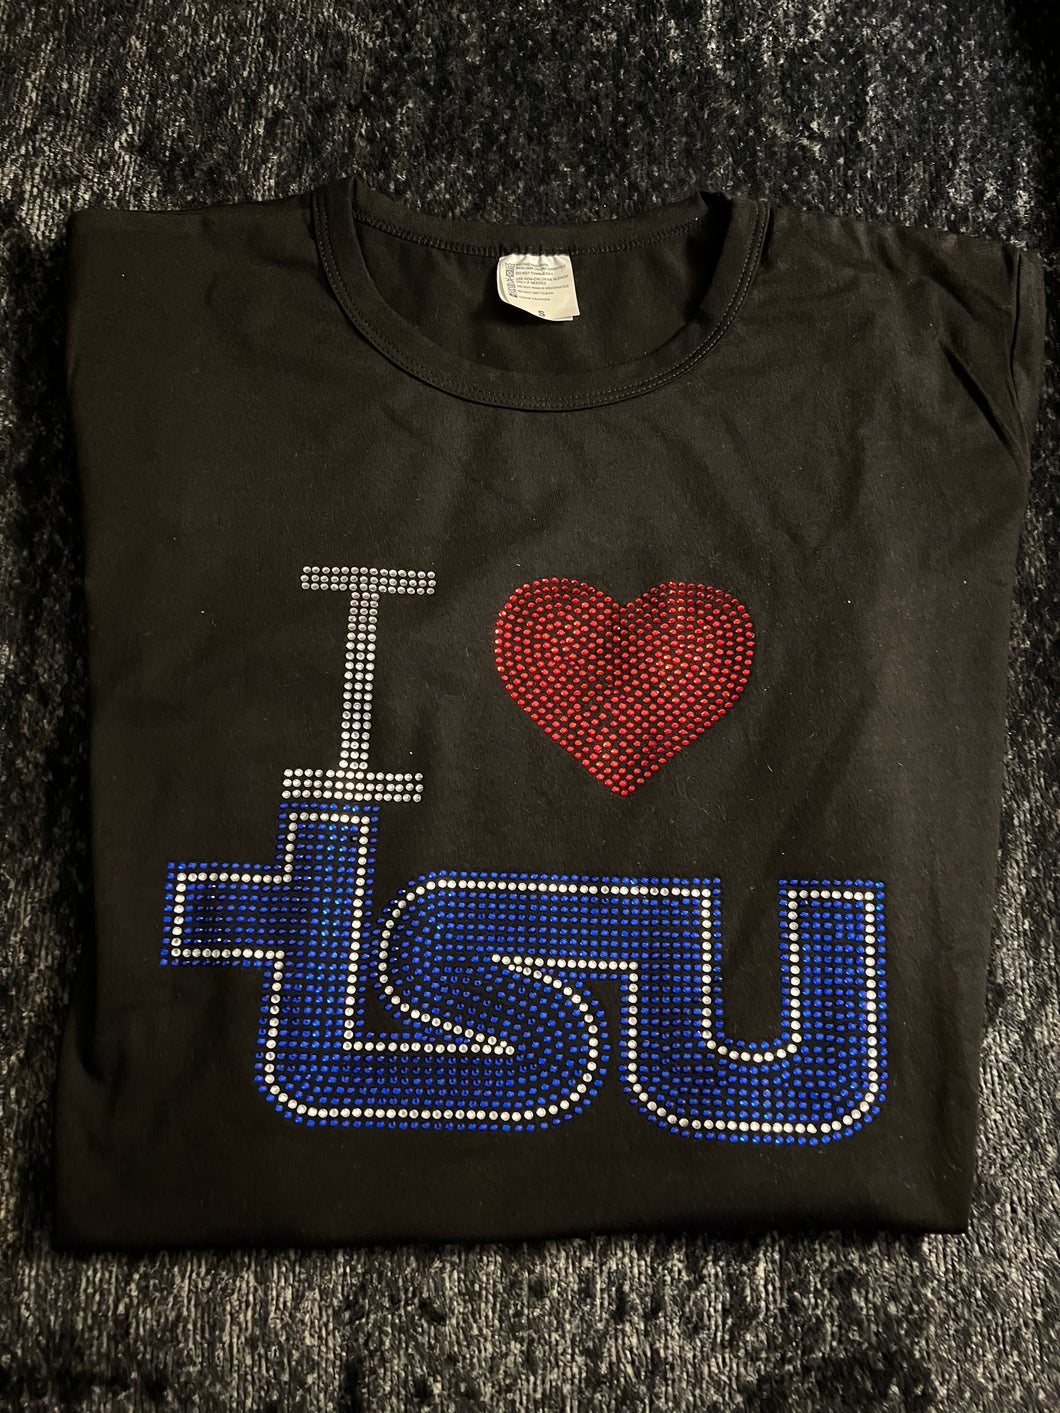 TSU Bling I ❤️ TSU T-Shirt